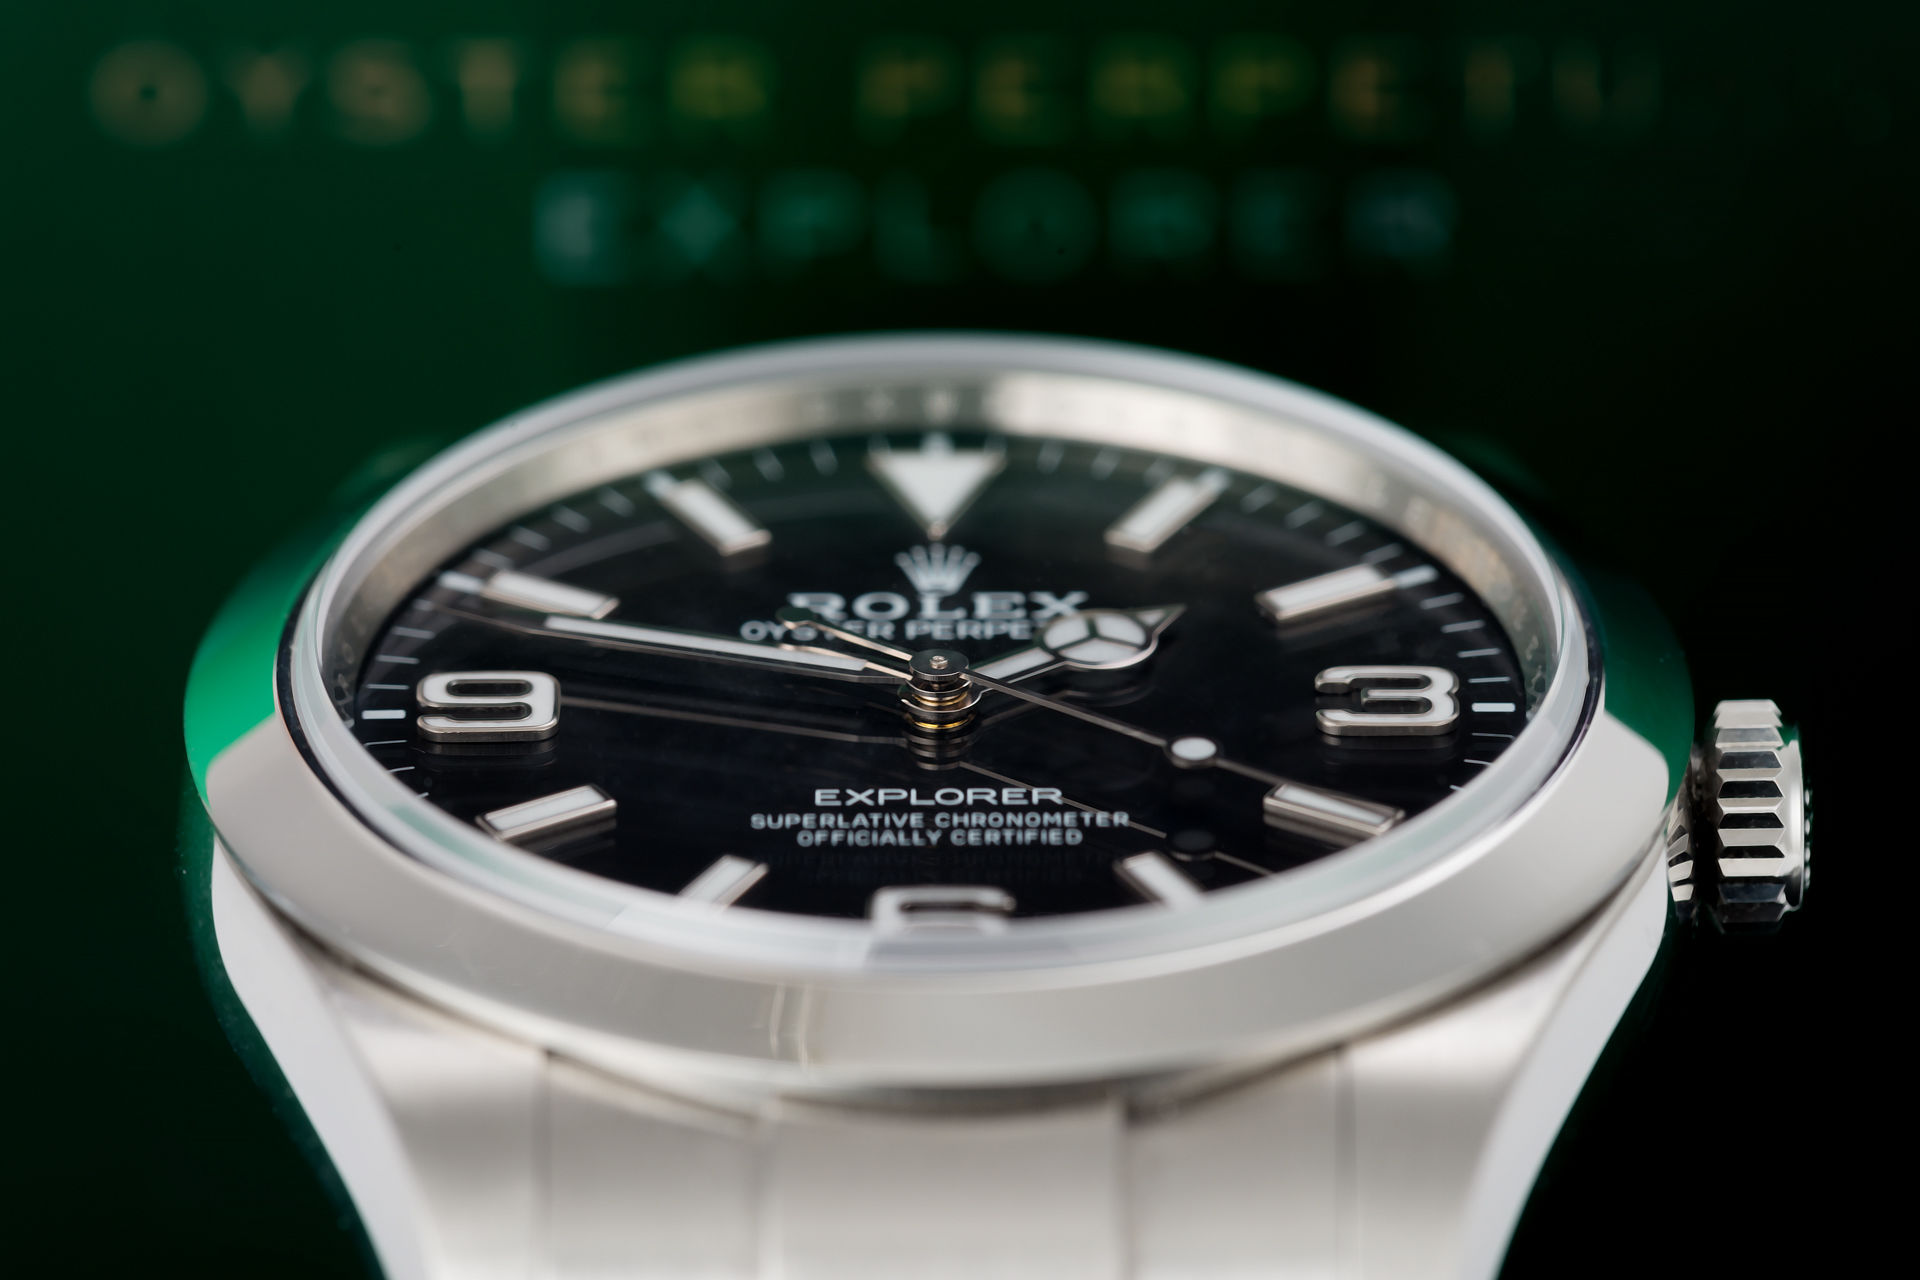 ref 214270 | Rolex Warranty to 2022 | Rolex Explorer